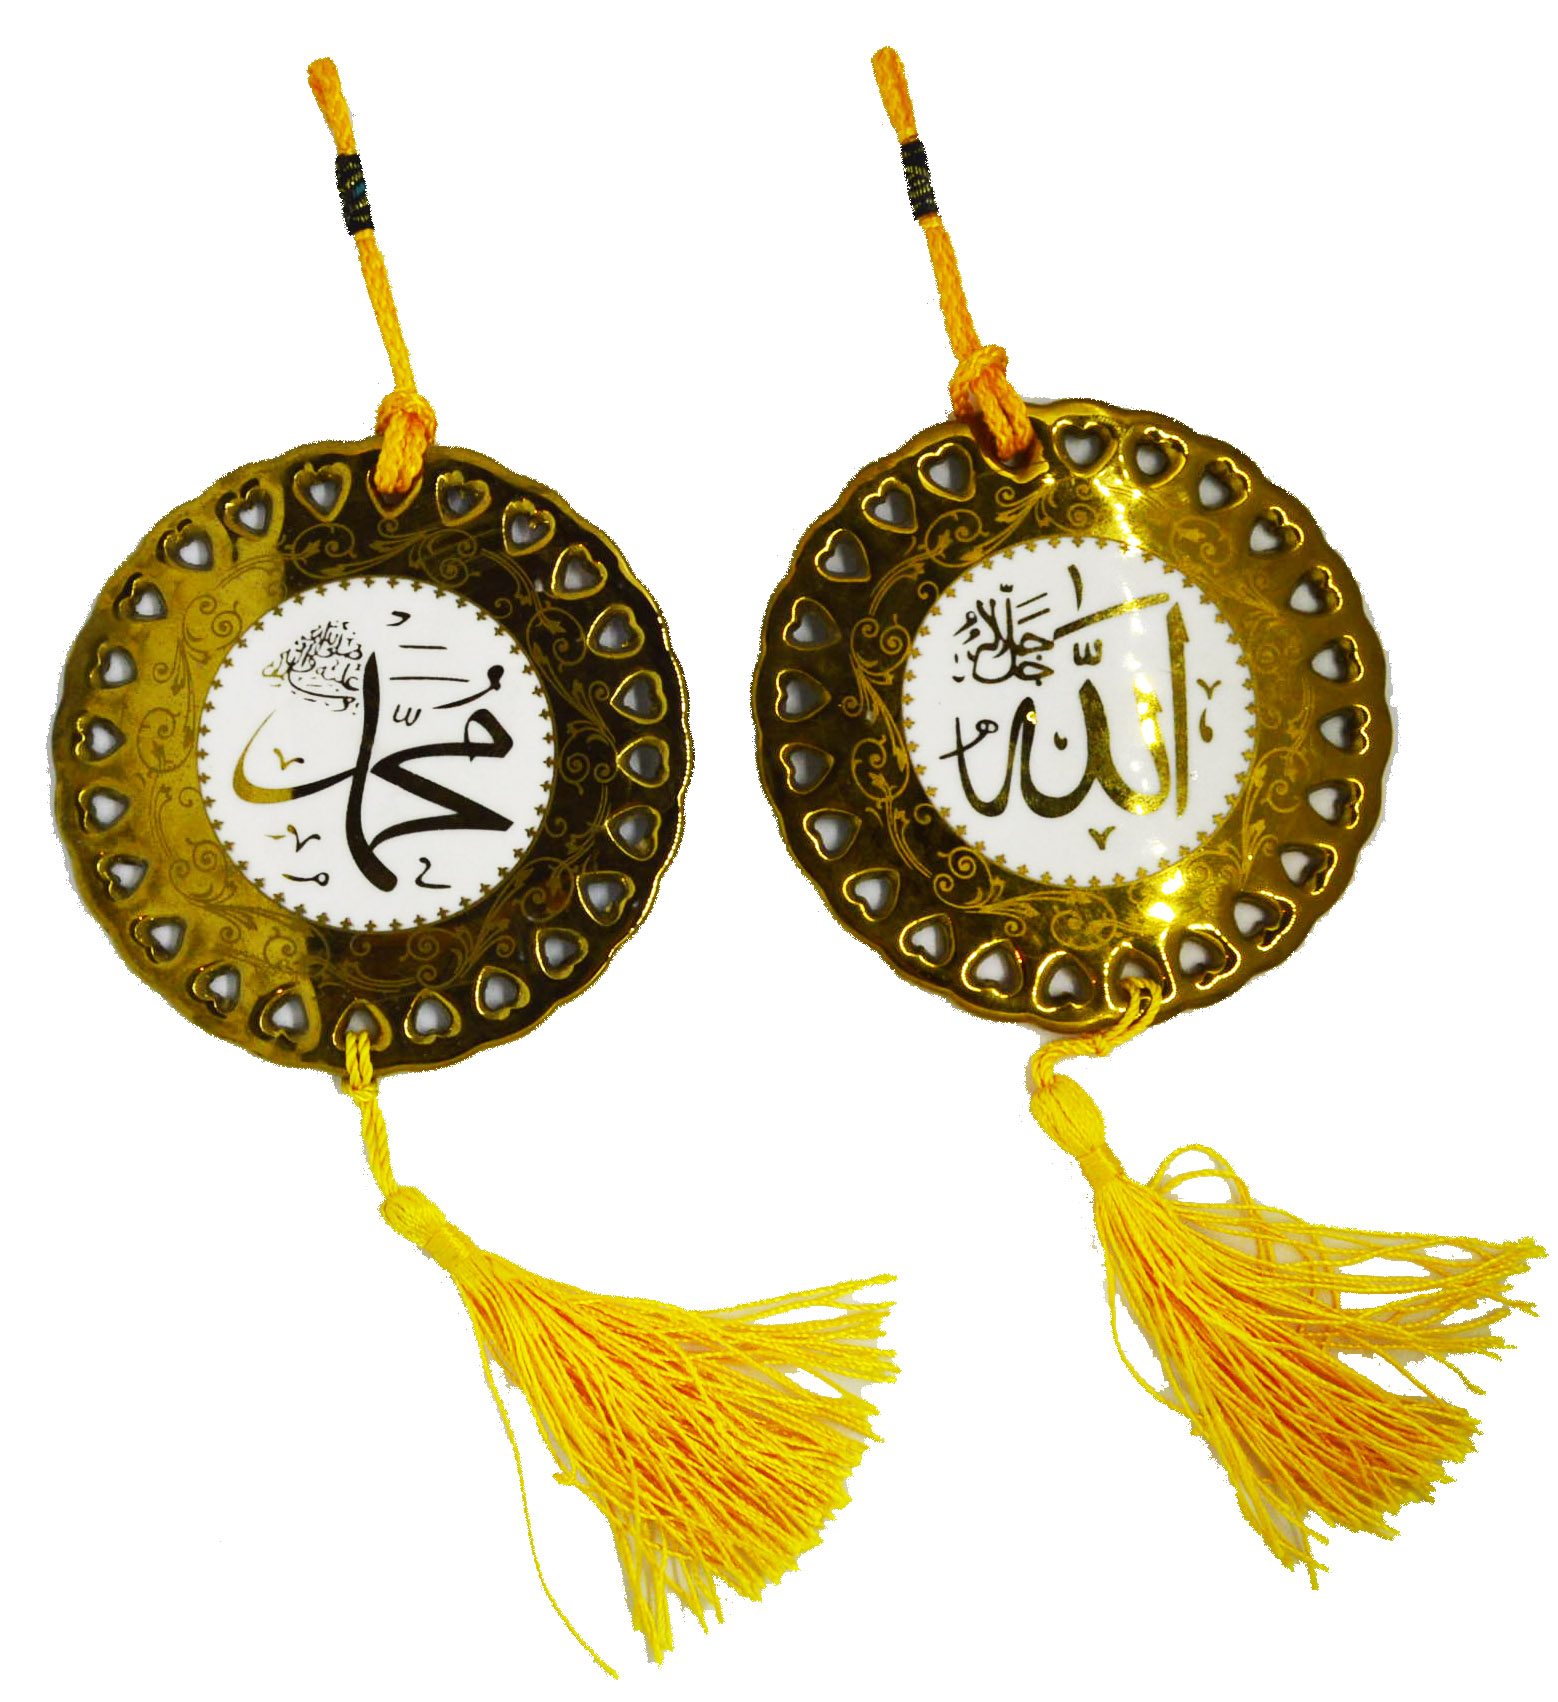 Wanddekoration Anhänger arabisch Kalimah Muslim islamische Deko Bild goldfarbig 